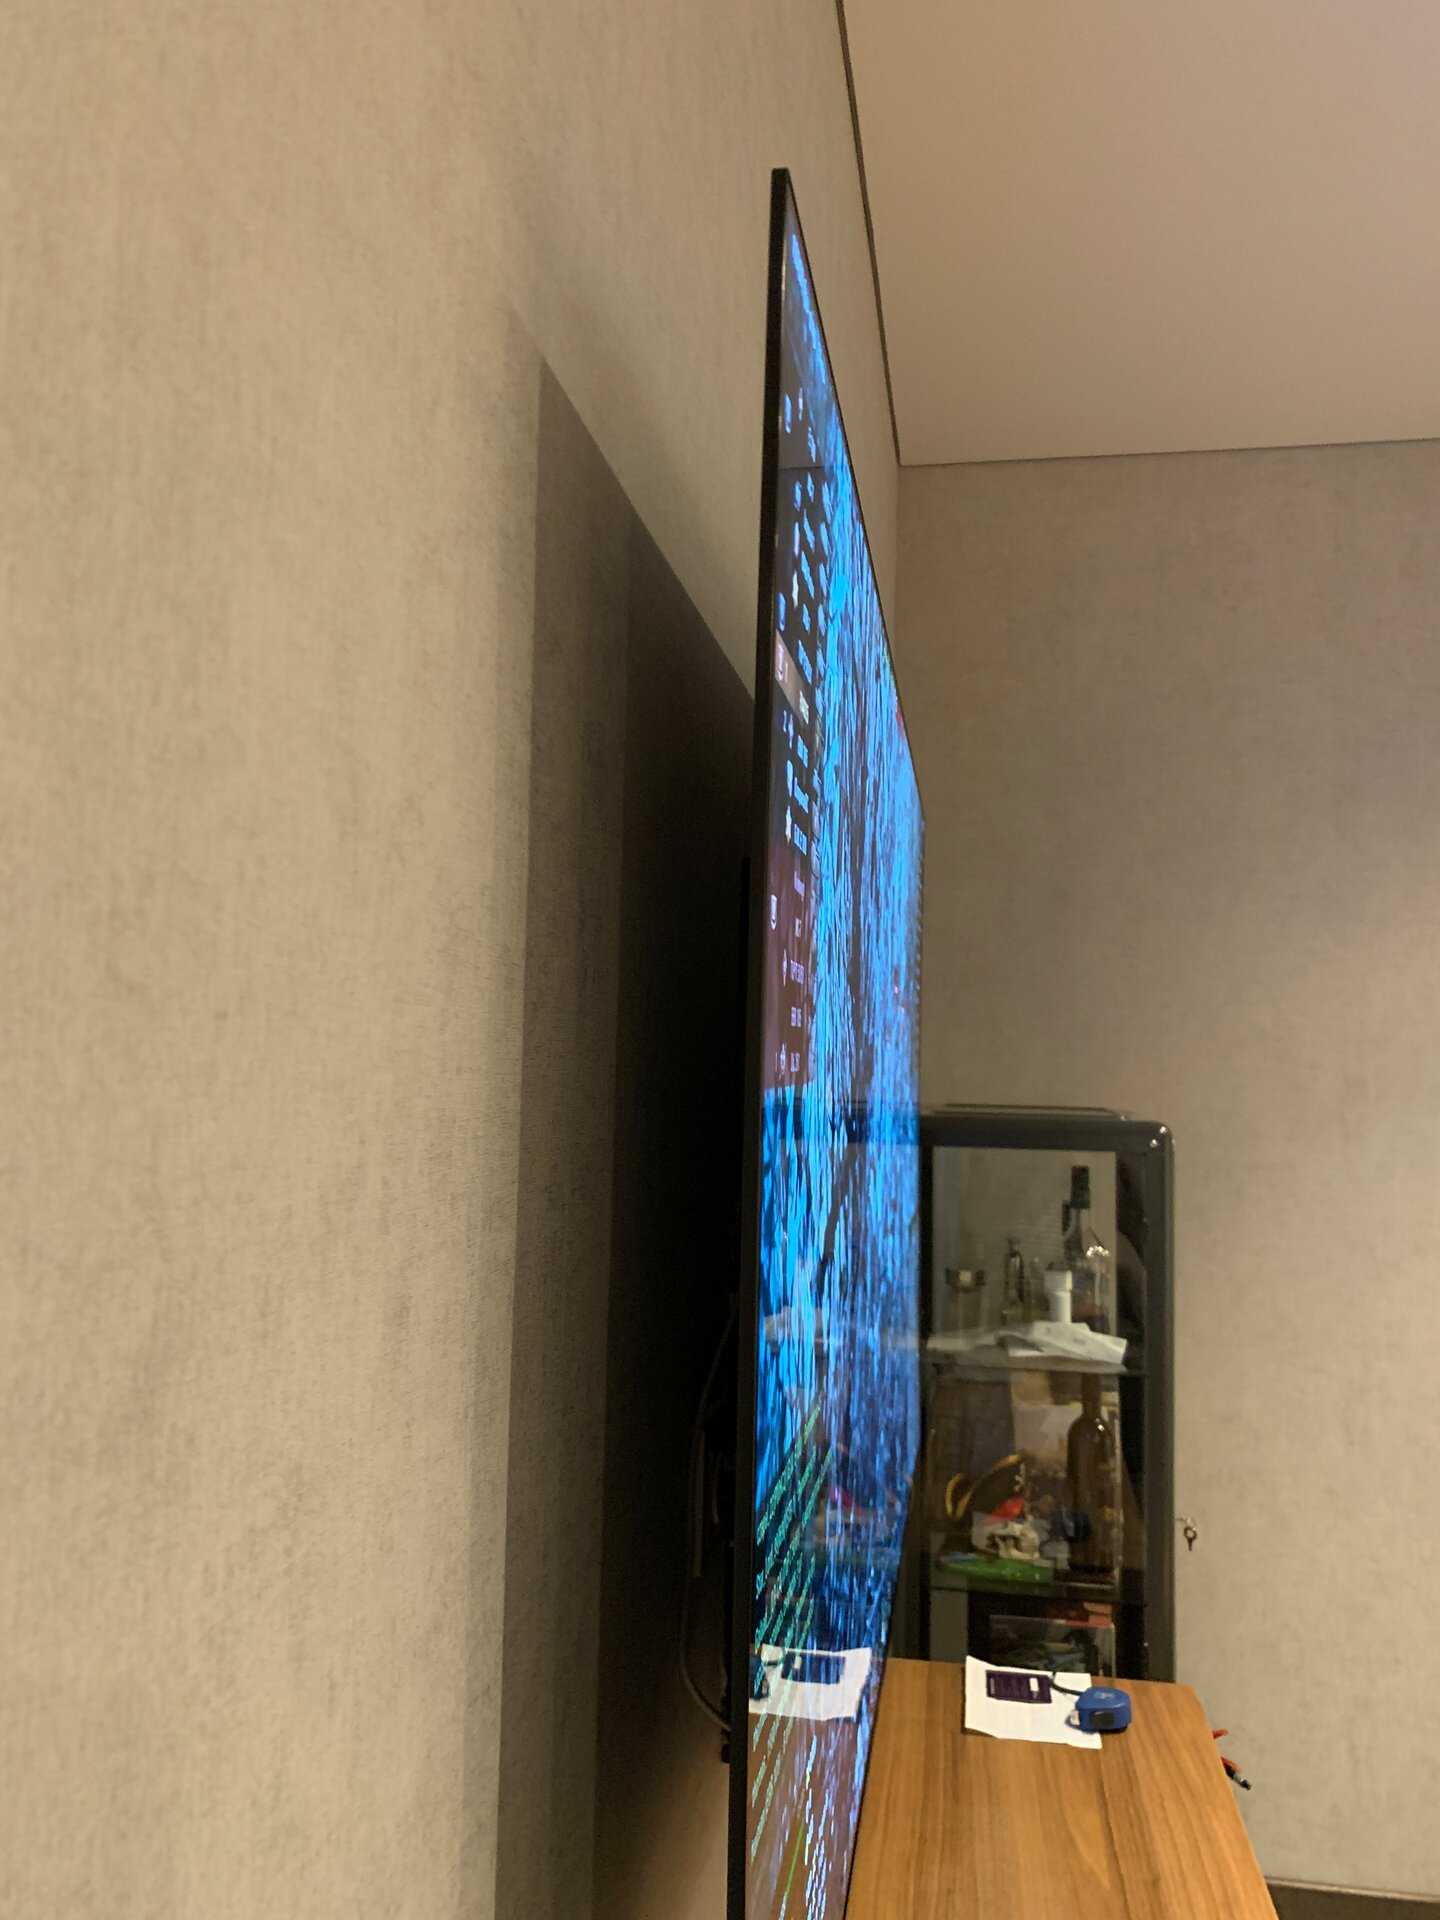 Обзор олед sony kd-65af8. модель 2018 года. - выбор телевизора